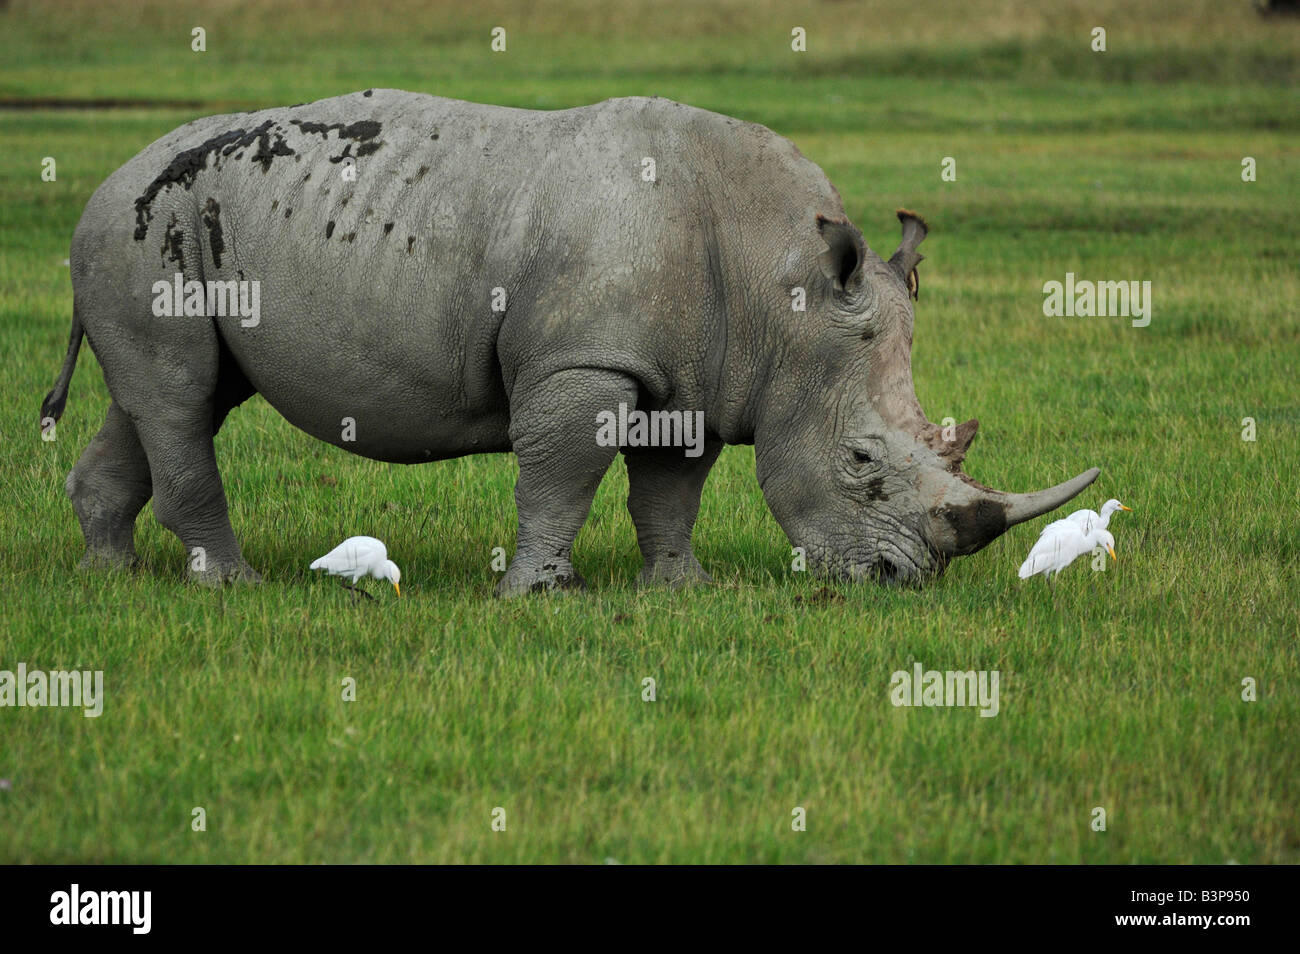 Le rhinocéros noir Diceros bicornis alimentation chez les bovins adultes Egret Bubulcus ibis Le lac Nakuru Kenya Afrique Banque D'Images